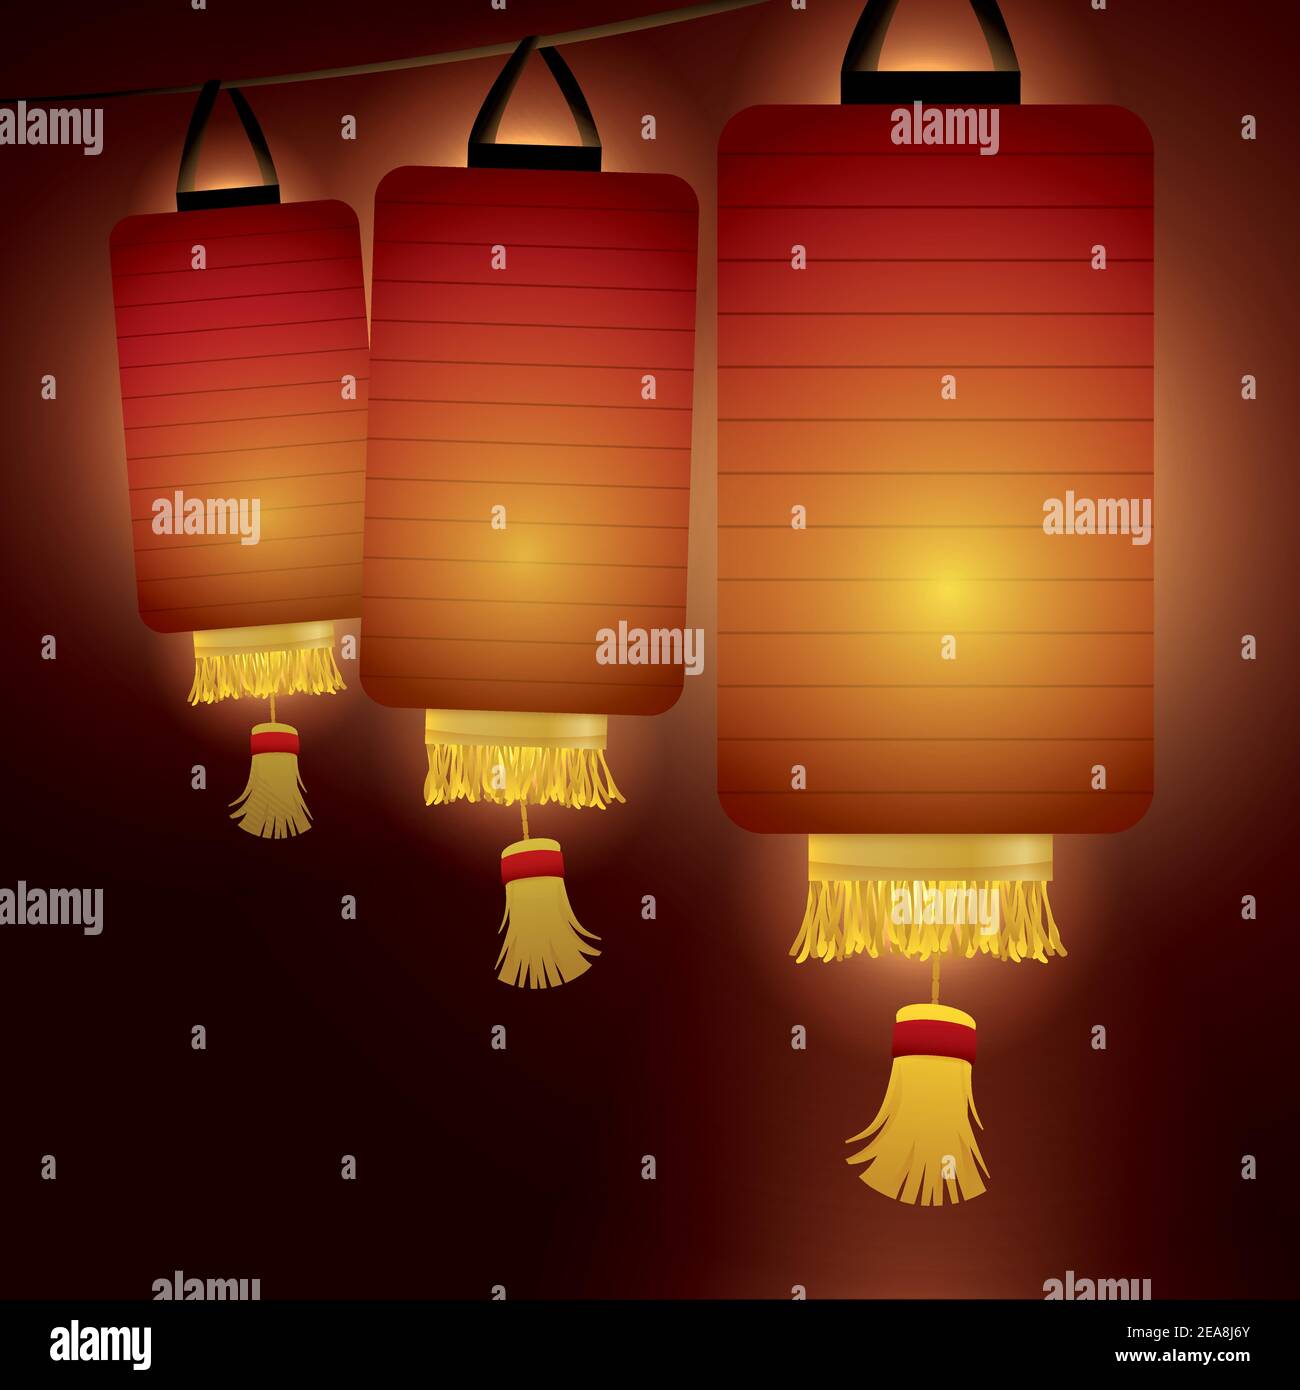 Lanternes chinoises aux formes cylindriques, décorées de franges illuminant la nuit. Illustration de Vecteur